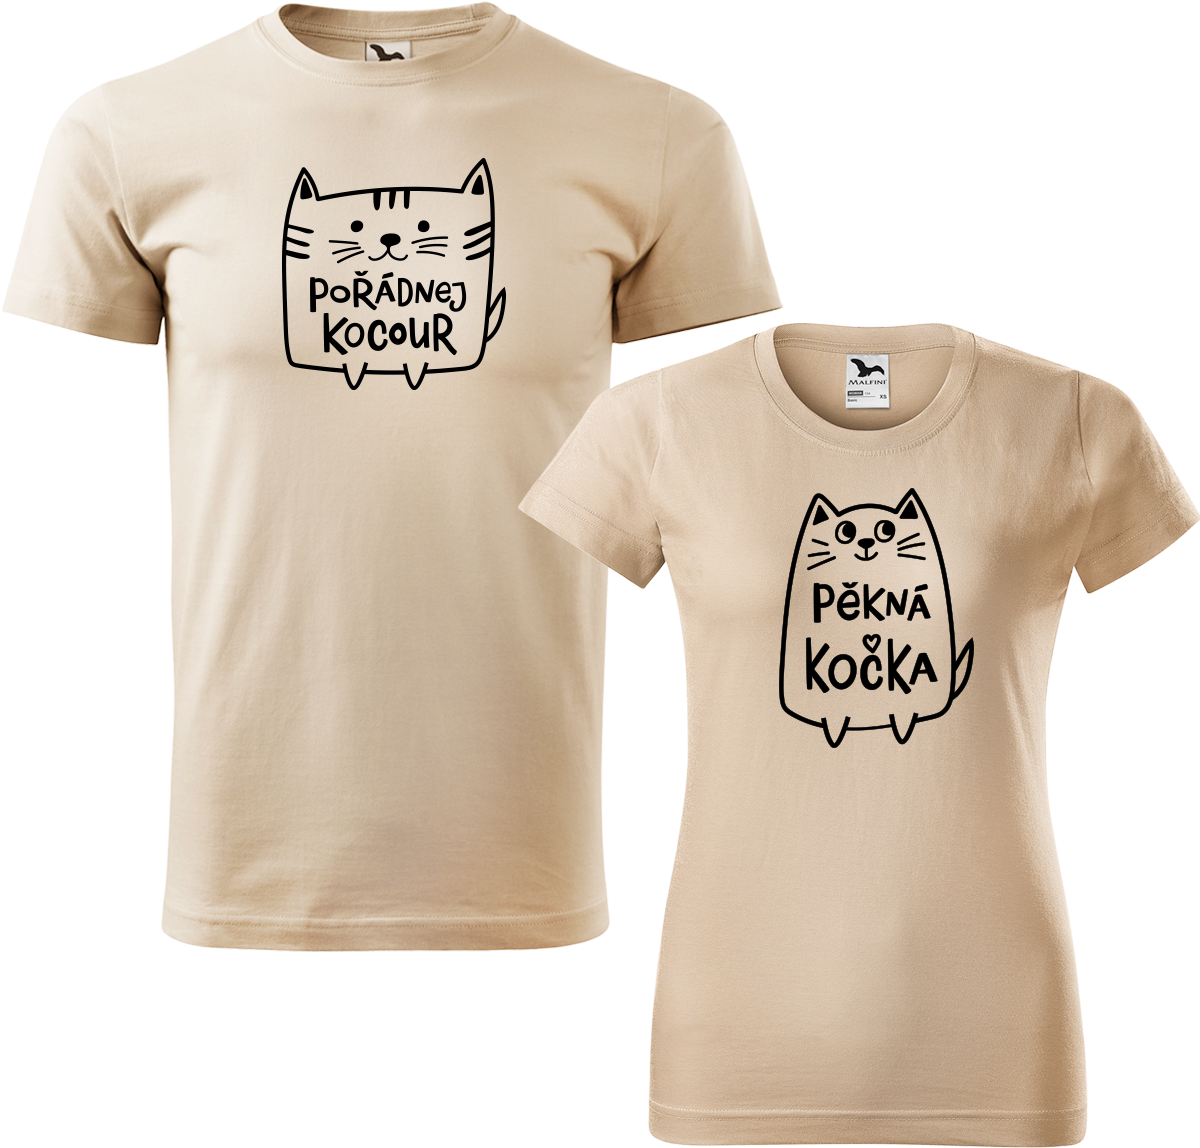 Trička pro páry - Pořádnej kocour a pěkná kočka Barva: Písková (08), Velikost dámské tričko: S, Velikost pánské tričko: XL